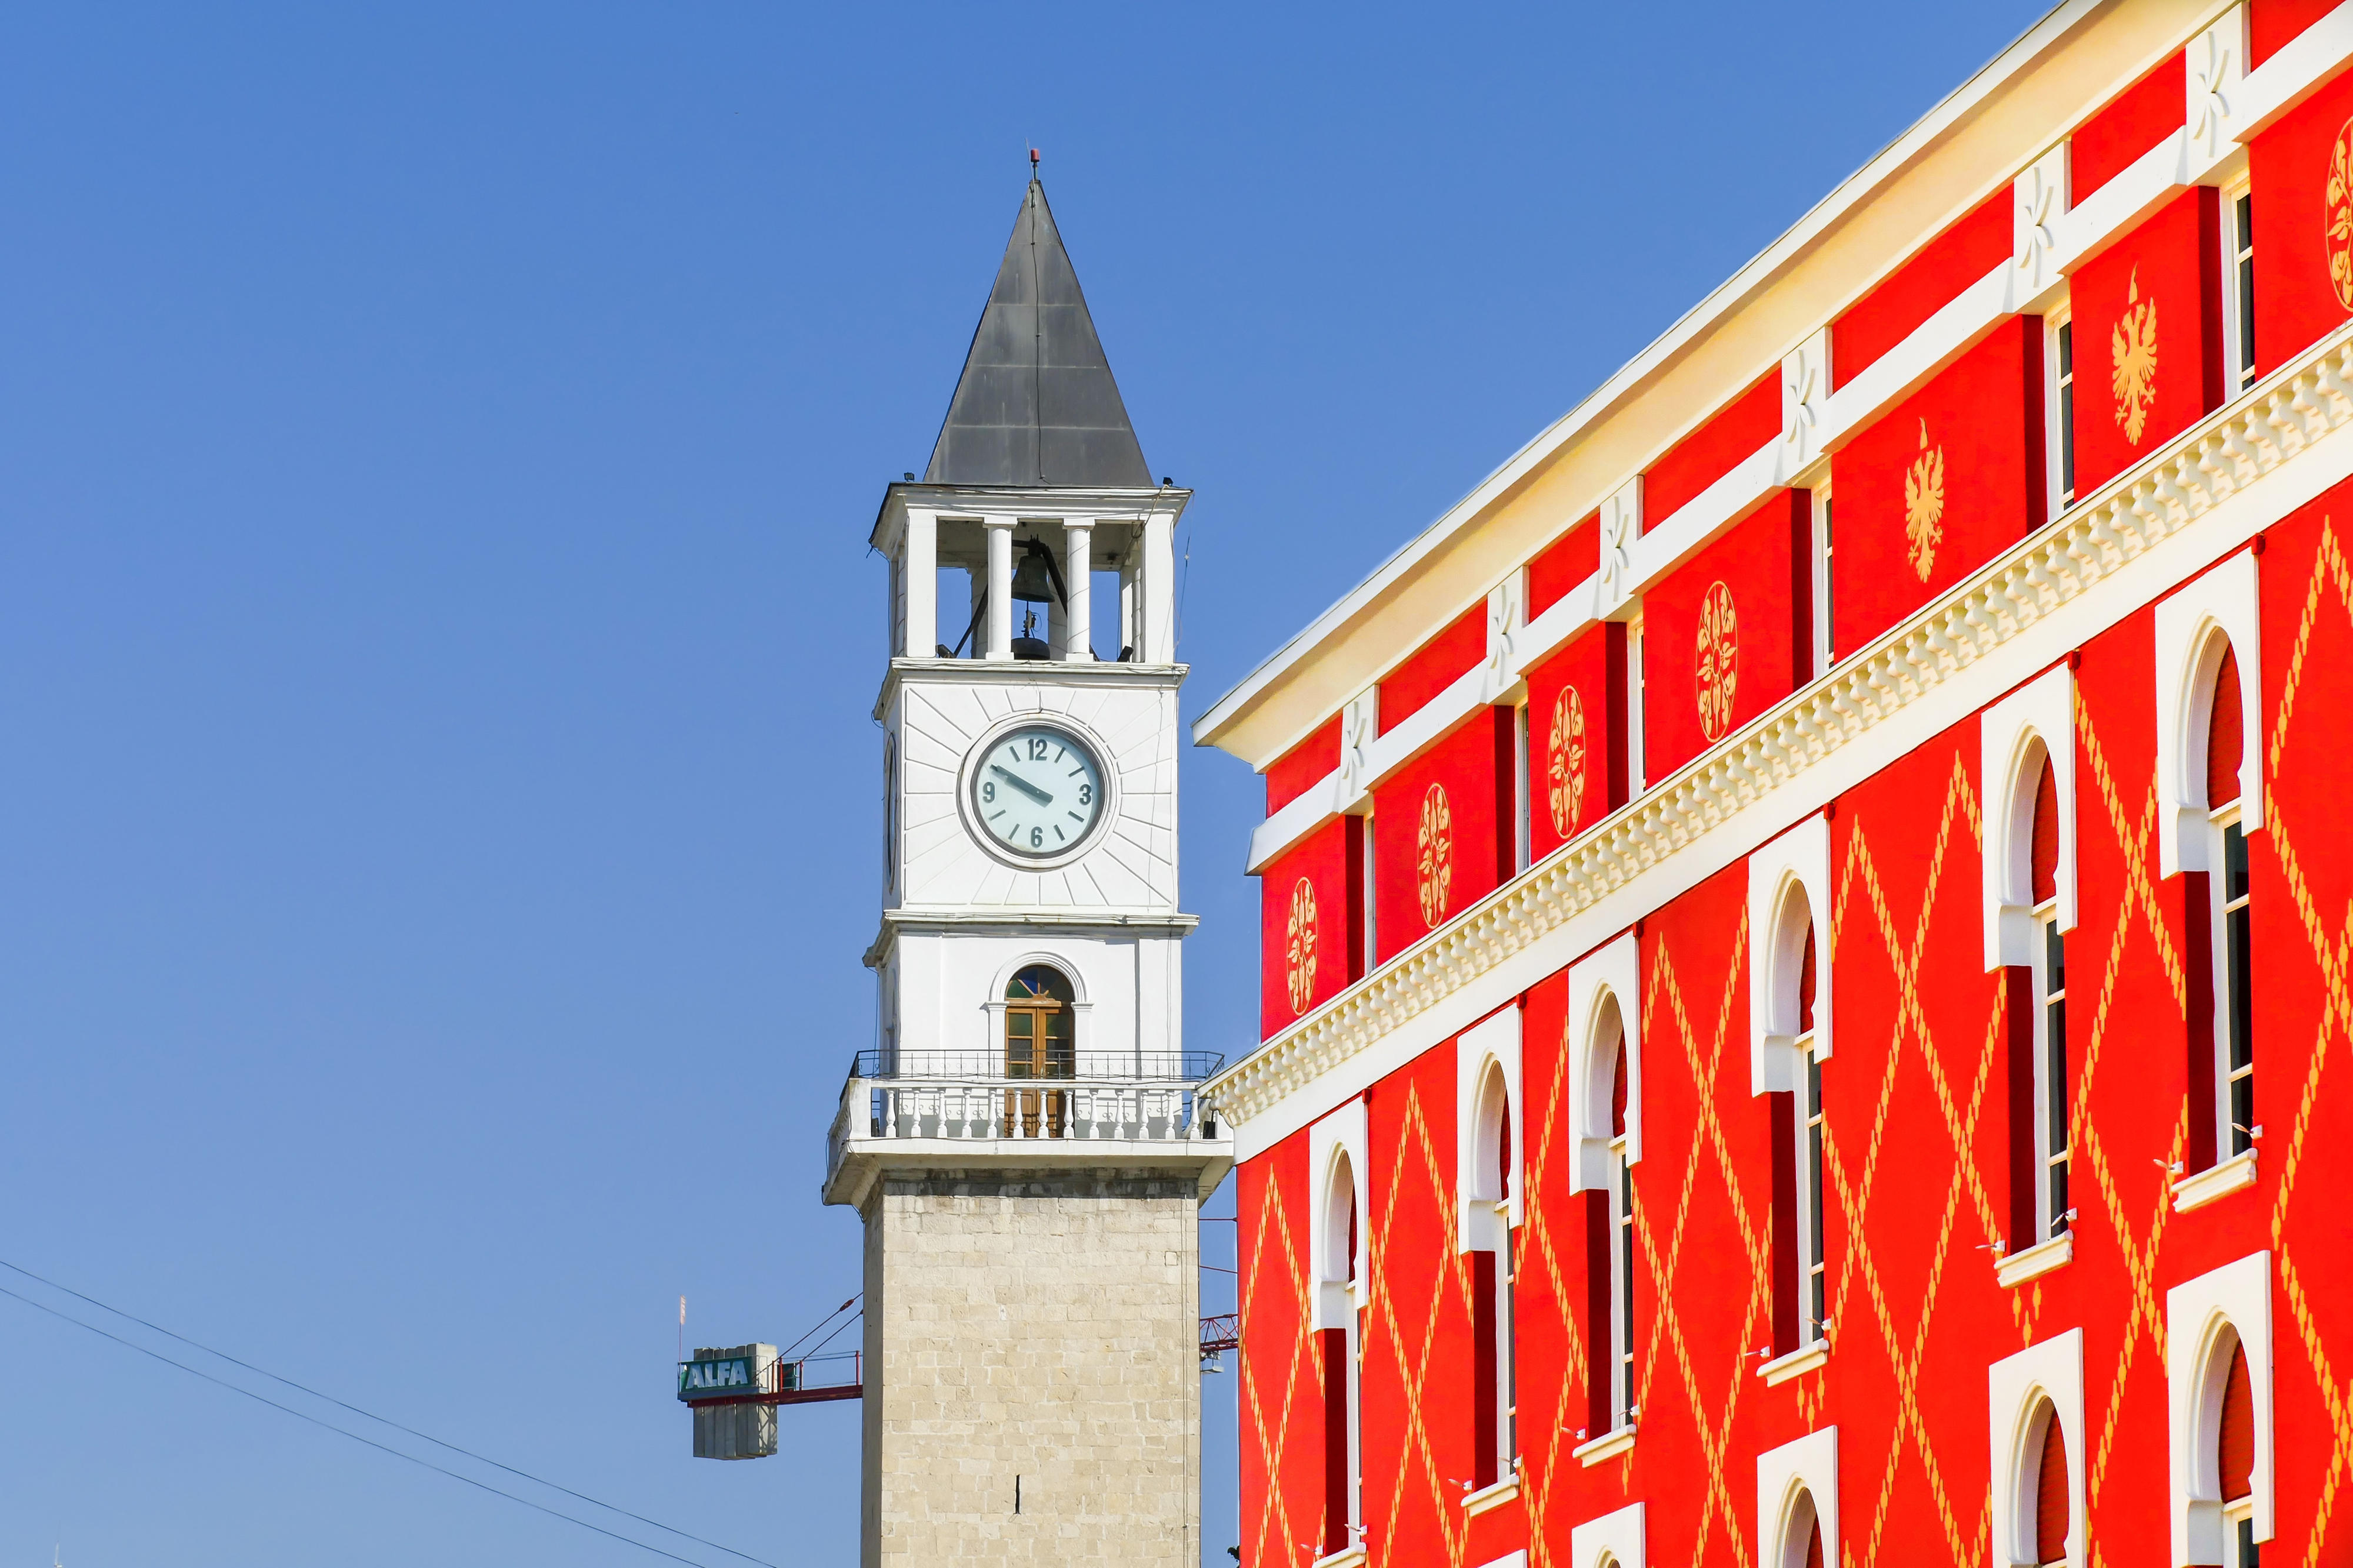 Architecture in Tirana